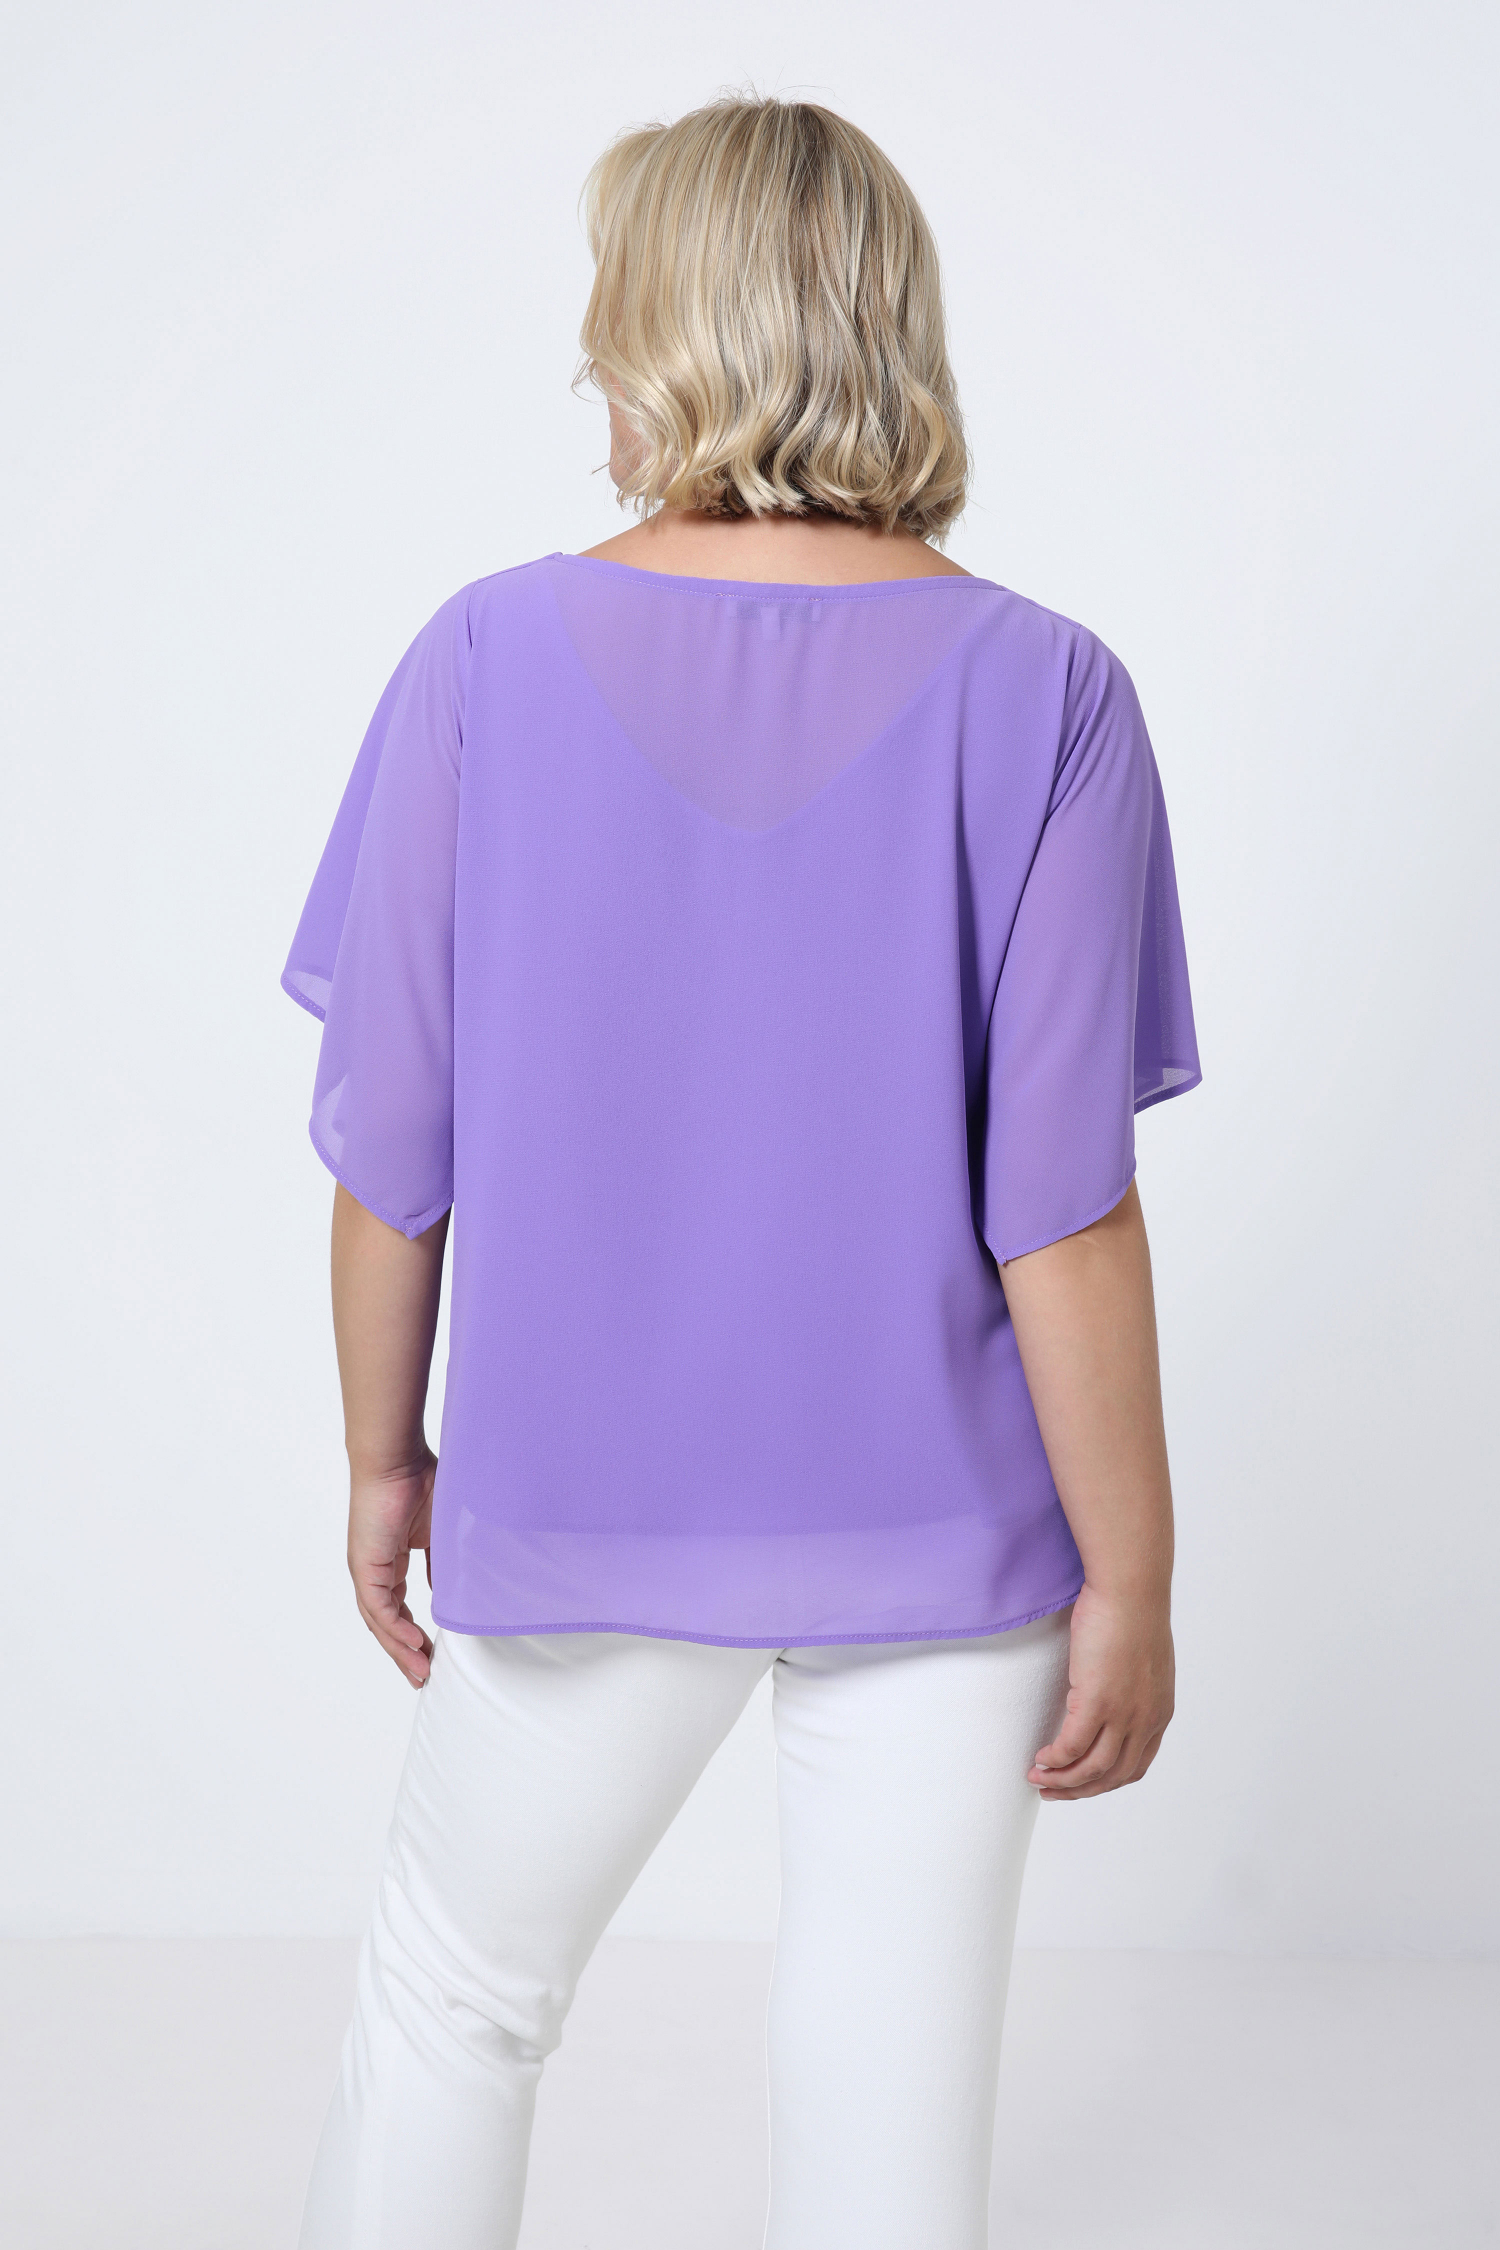 Lined plain voile blouse